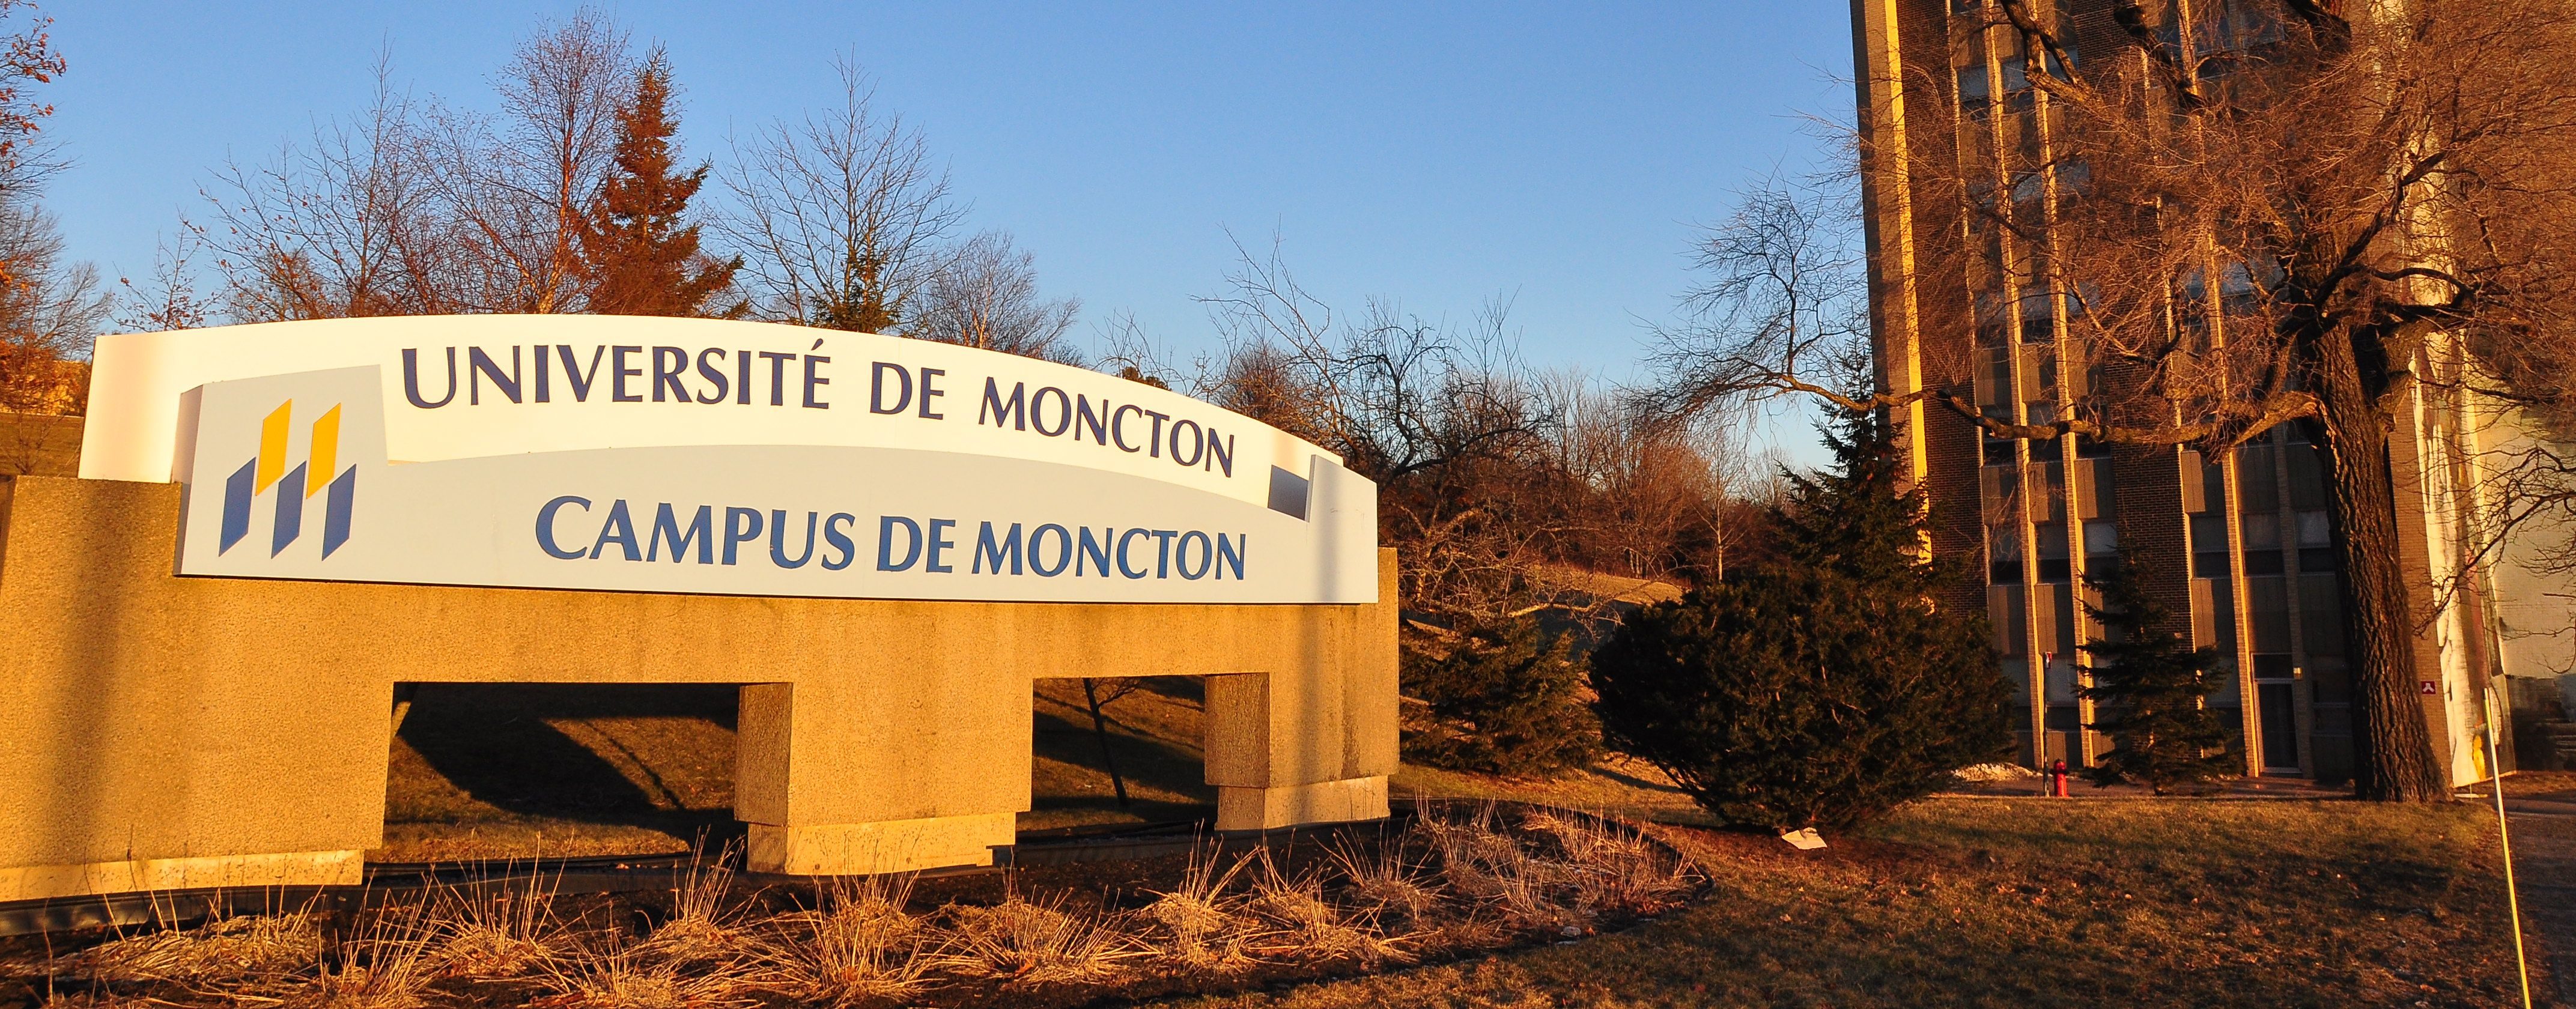 Universit de Moncton